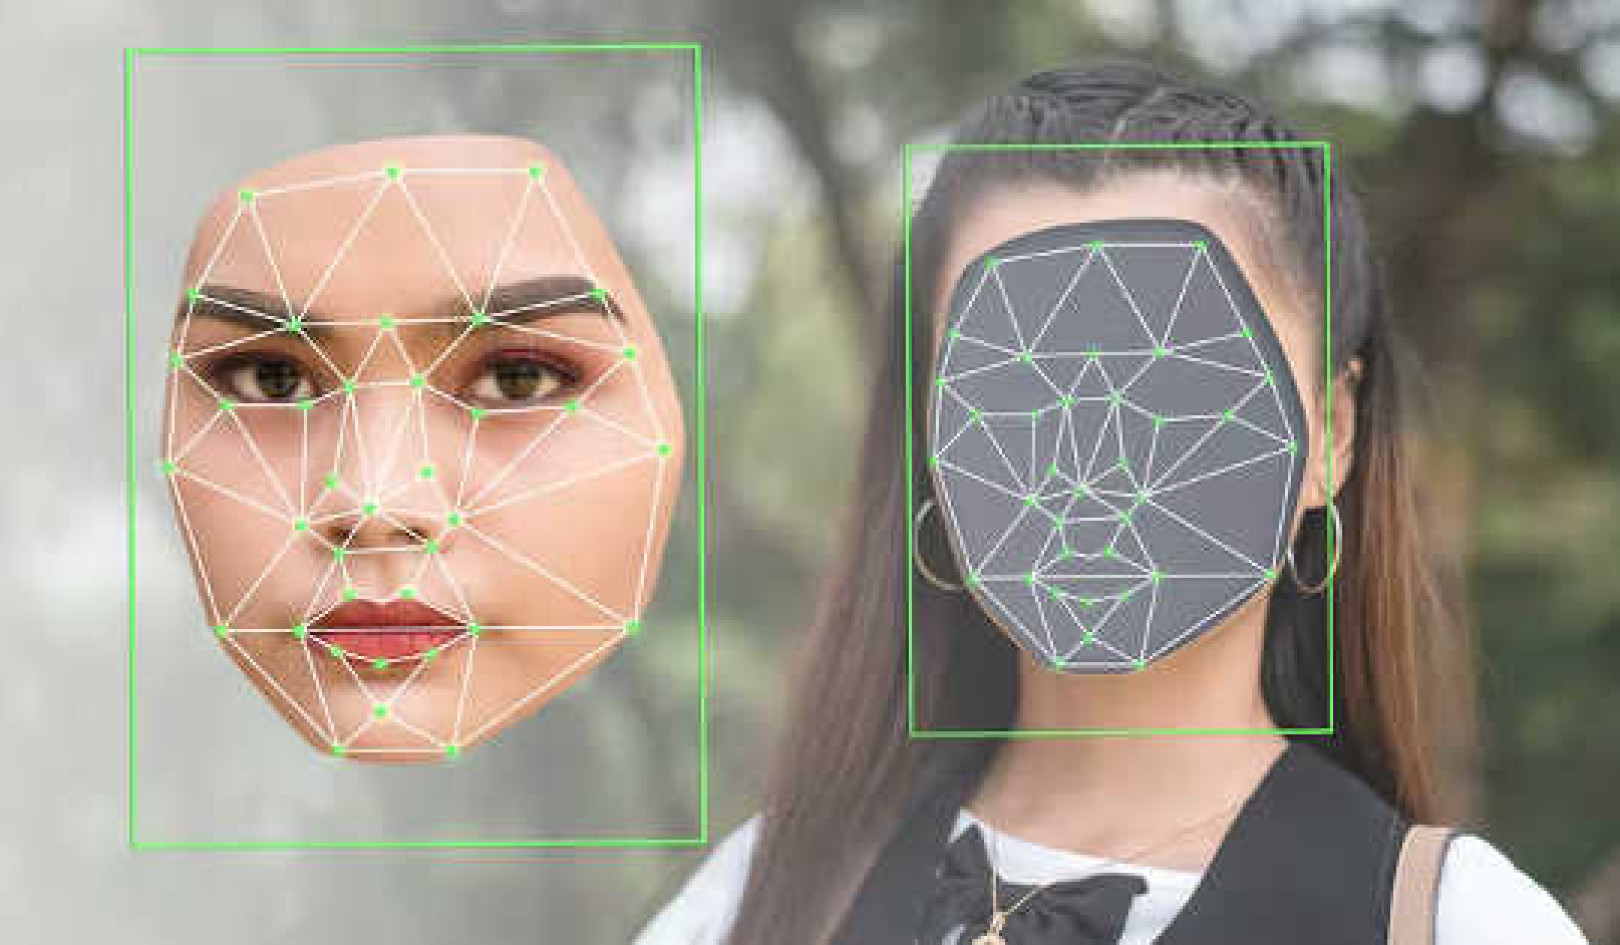 El uso de deepfakes puede sembrar dudas, generar confusión y desconfianza en los espectadores